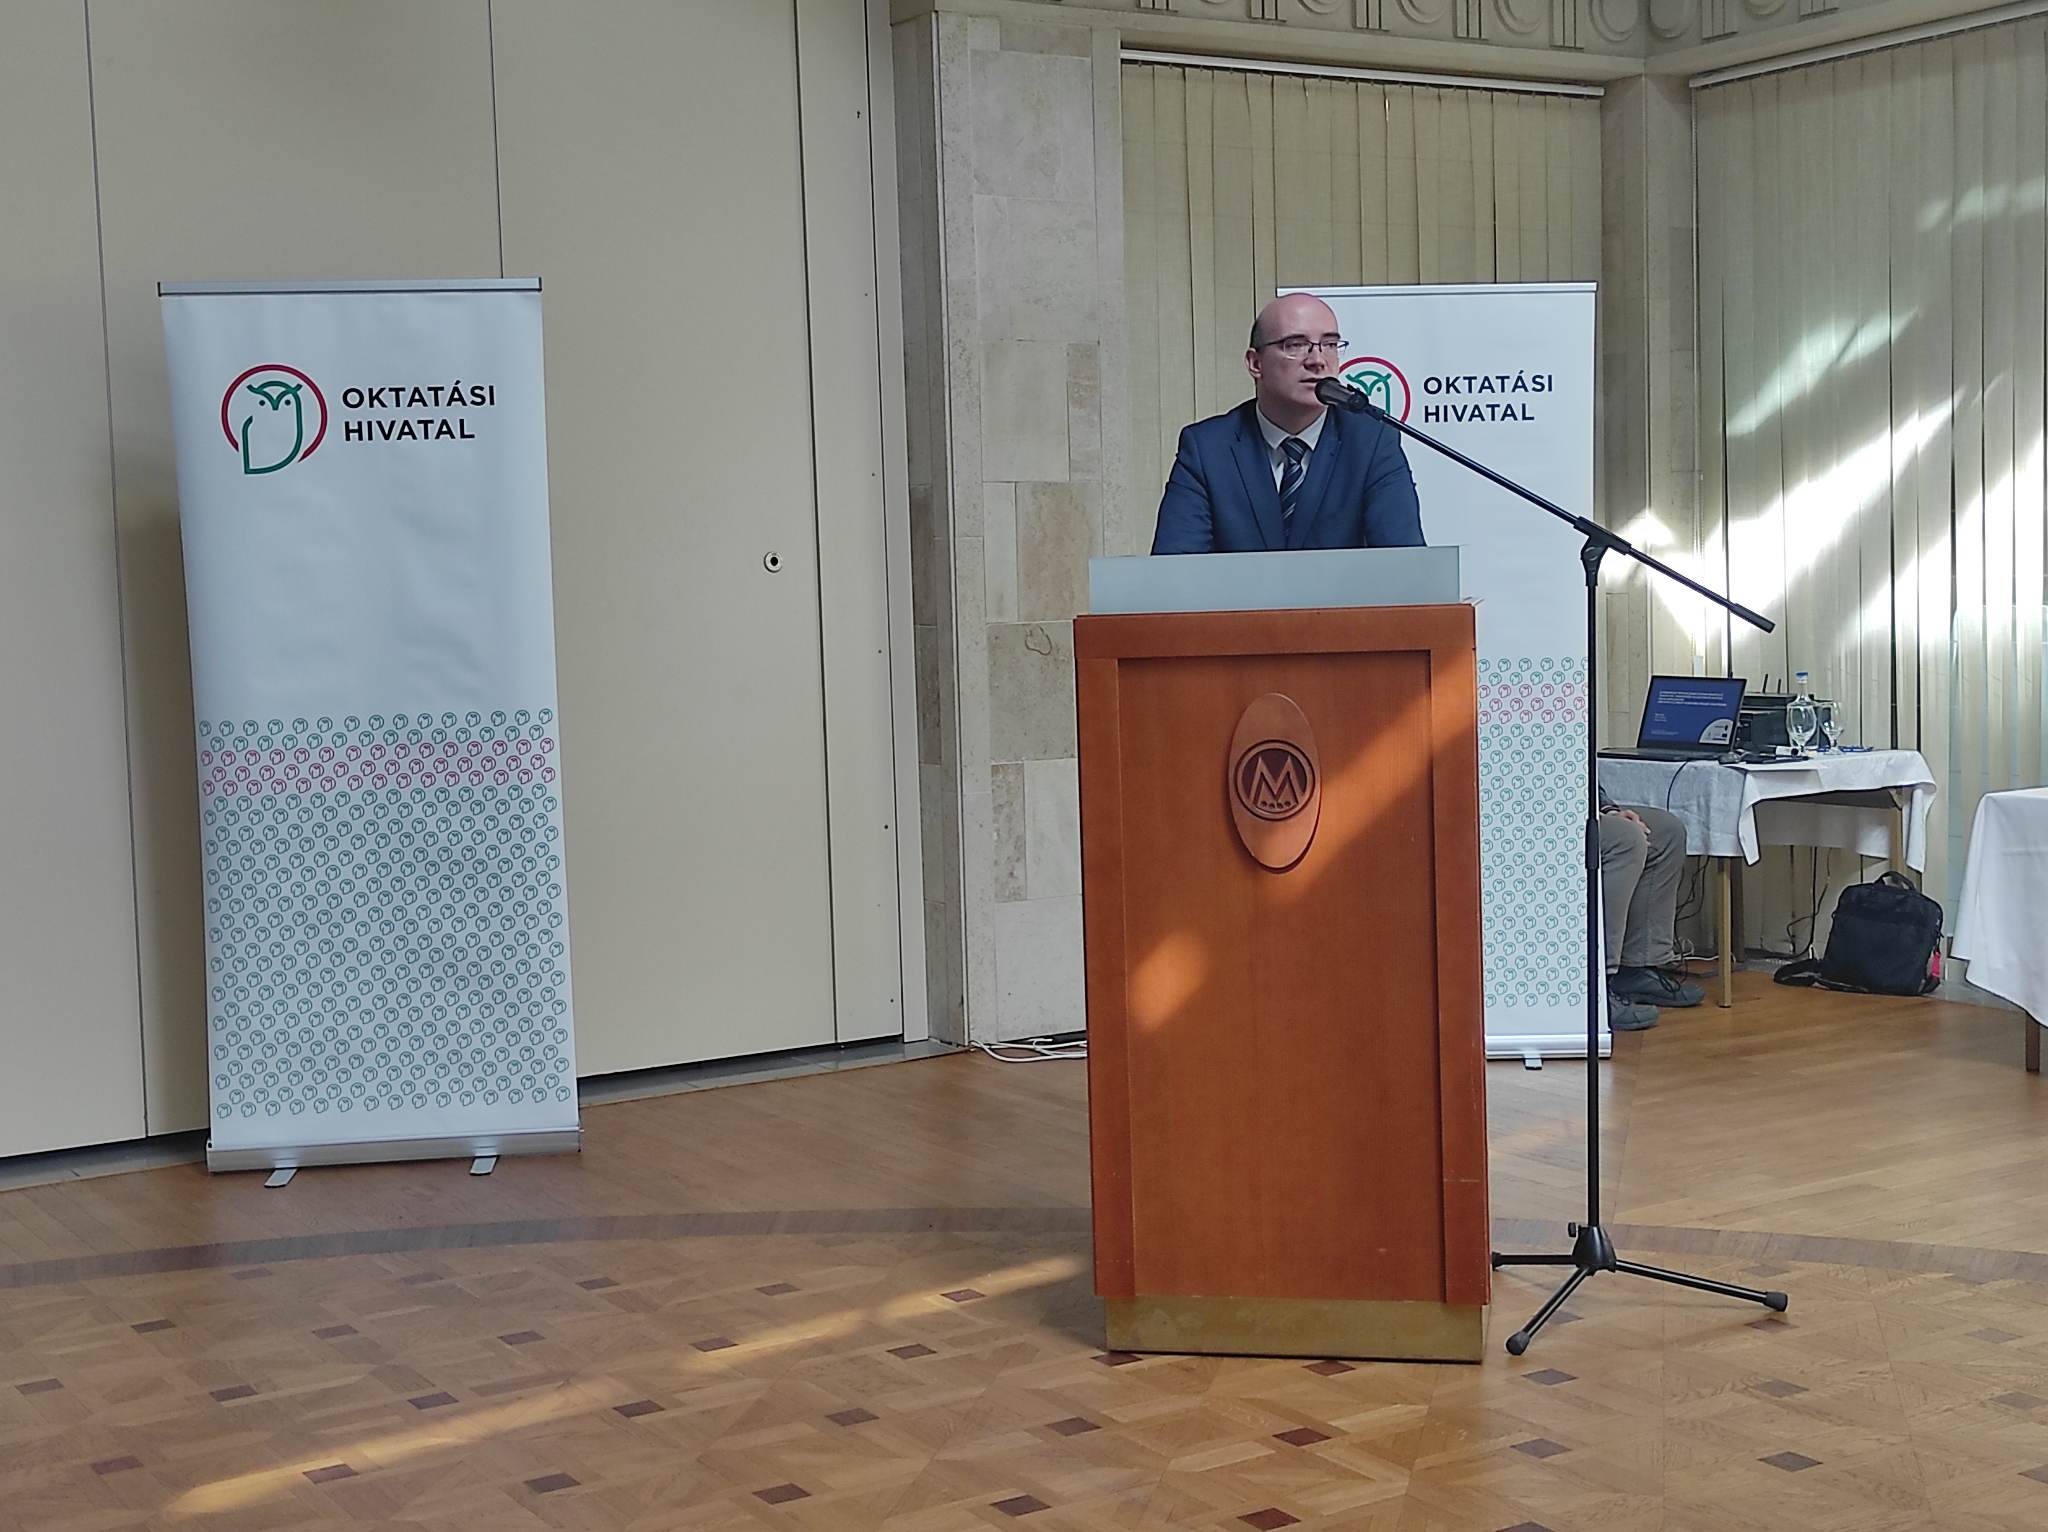 Befejeződött a tankönyvfejlesztési program - konferencia Fehérváron